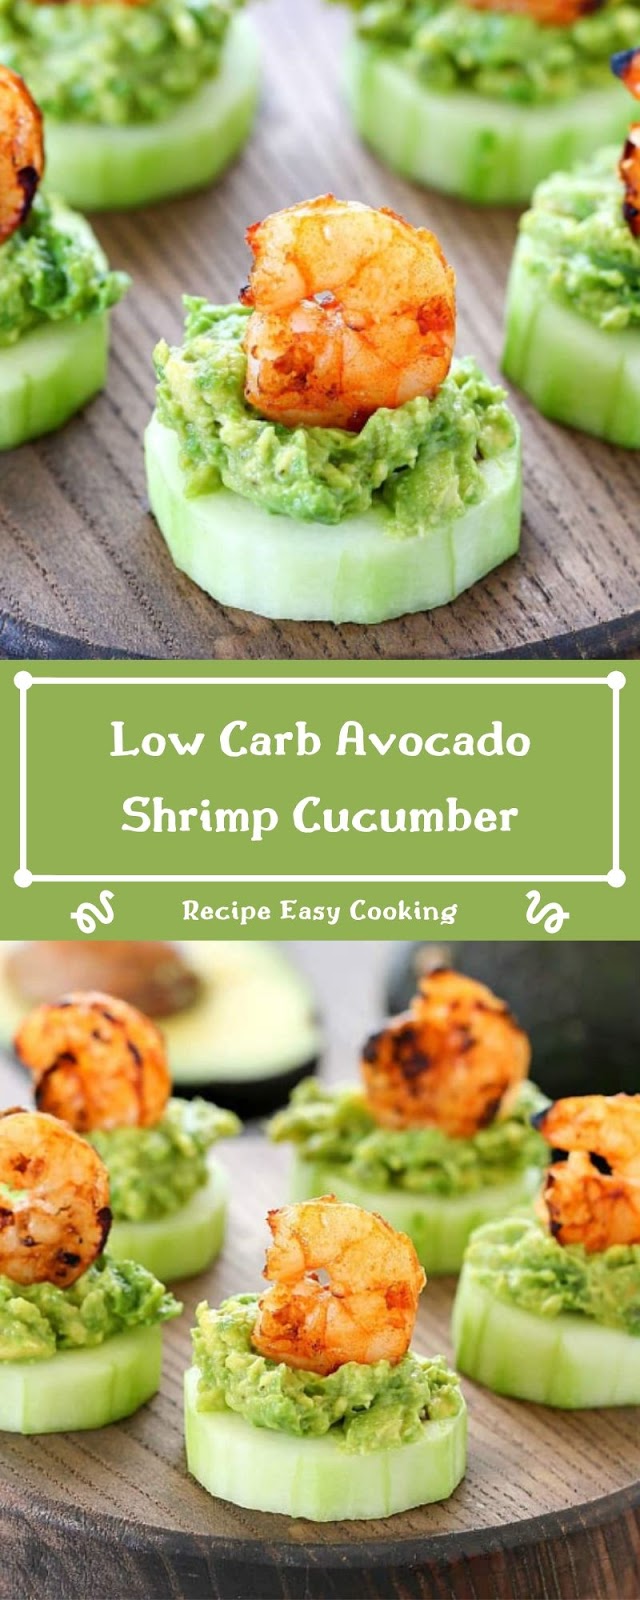 Low Carb Avocado Shrimp Cucumber